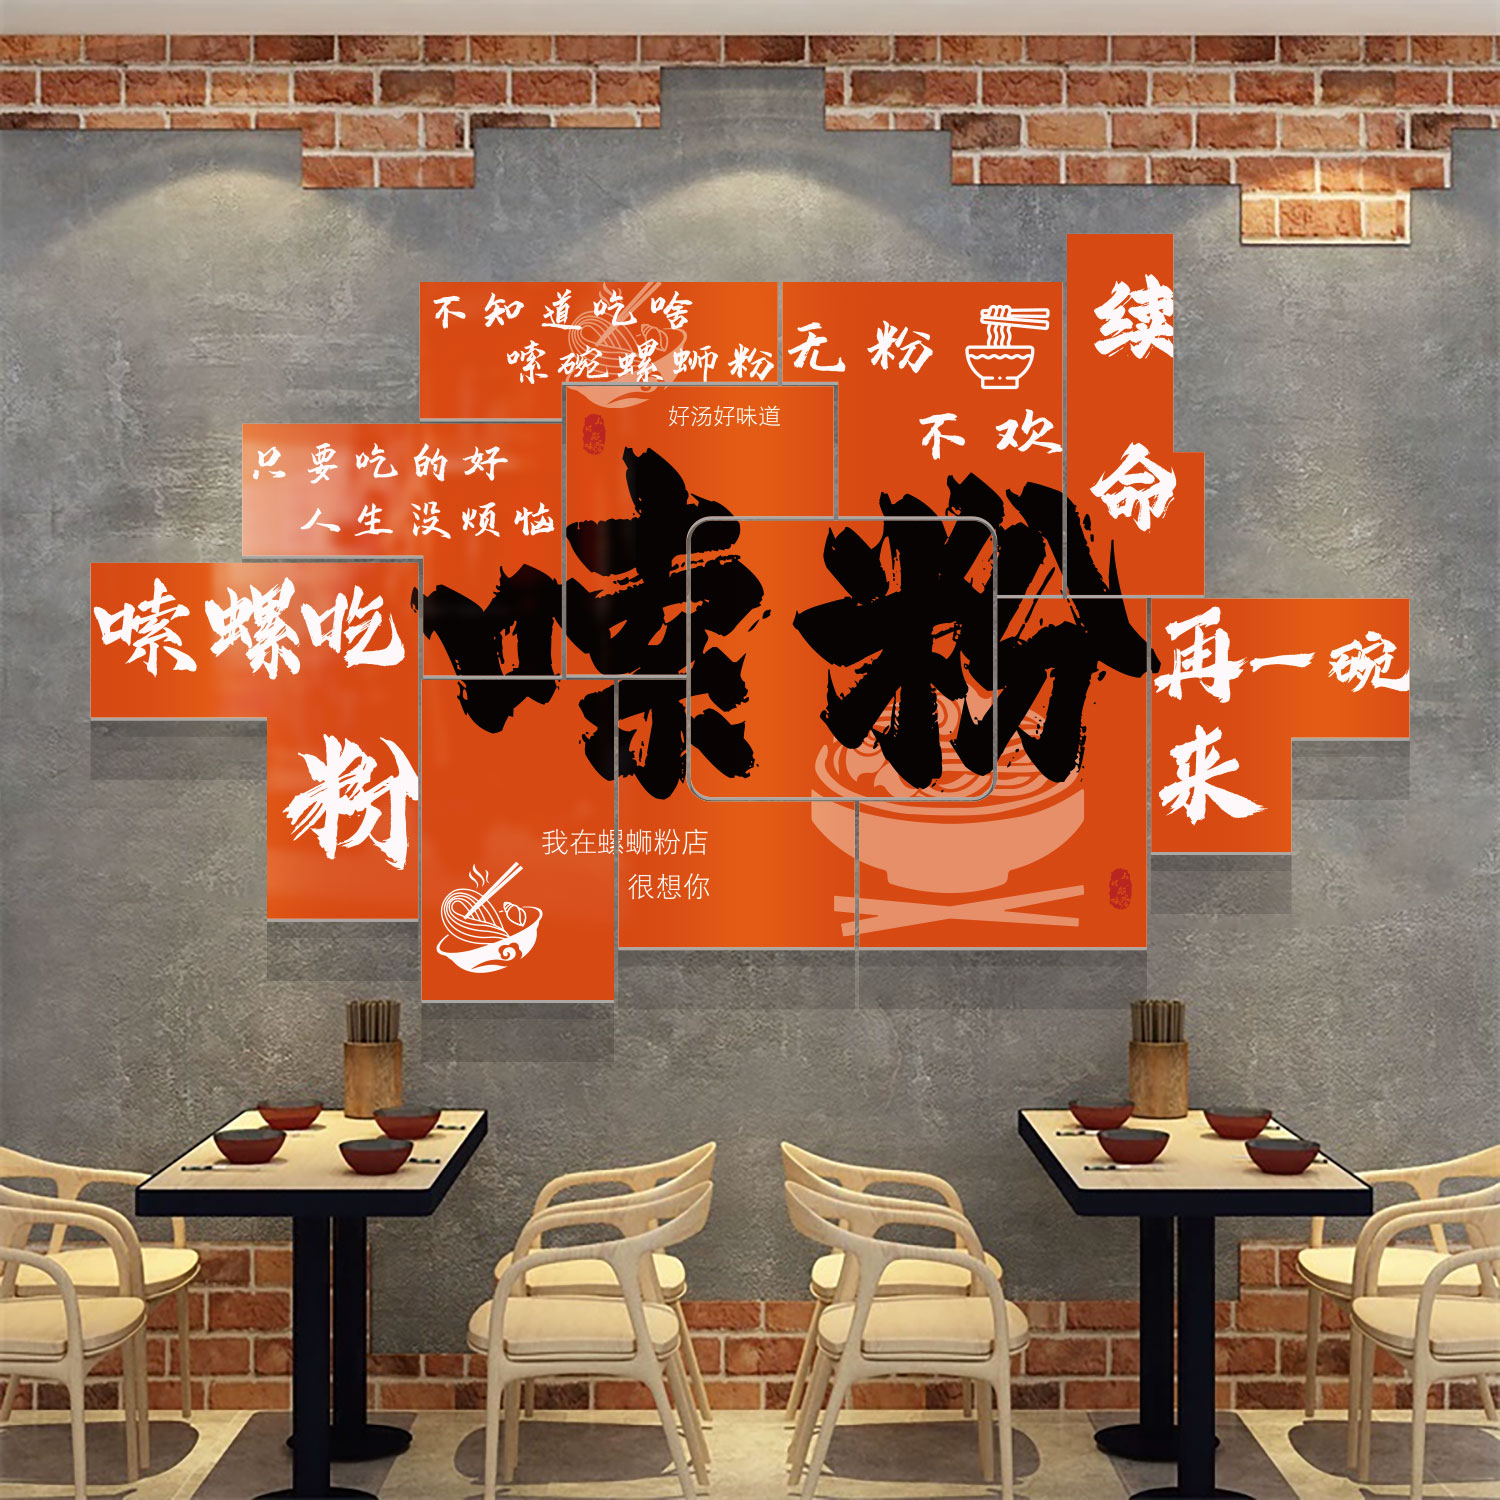 米线店墙装饰品网红米粉面馆壁挂画小吃餐饮馆创意广告玻璃门贴纸 - 图1